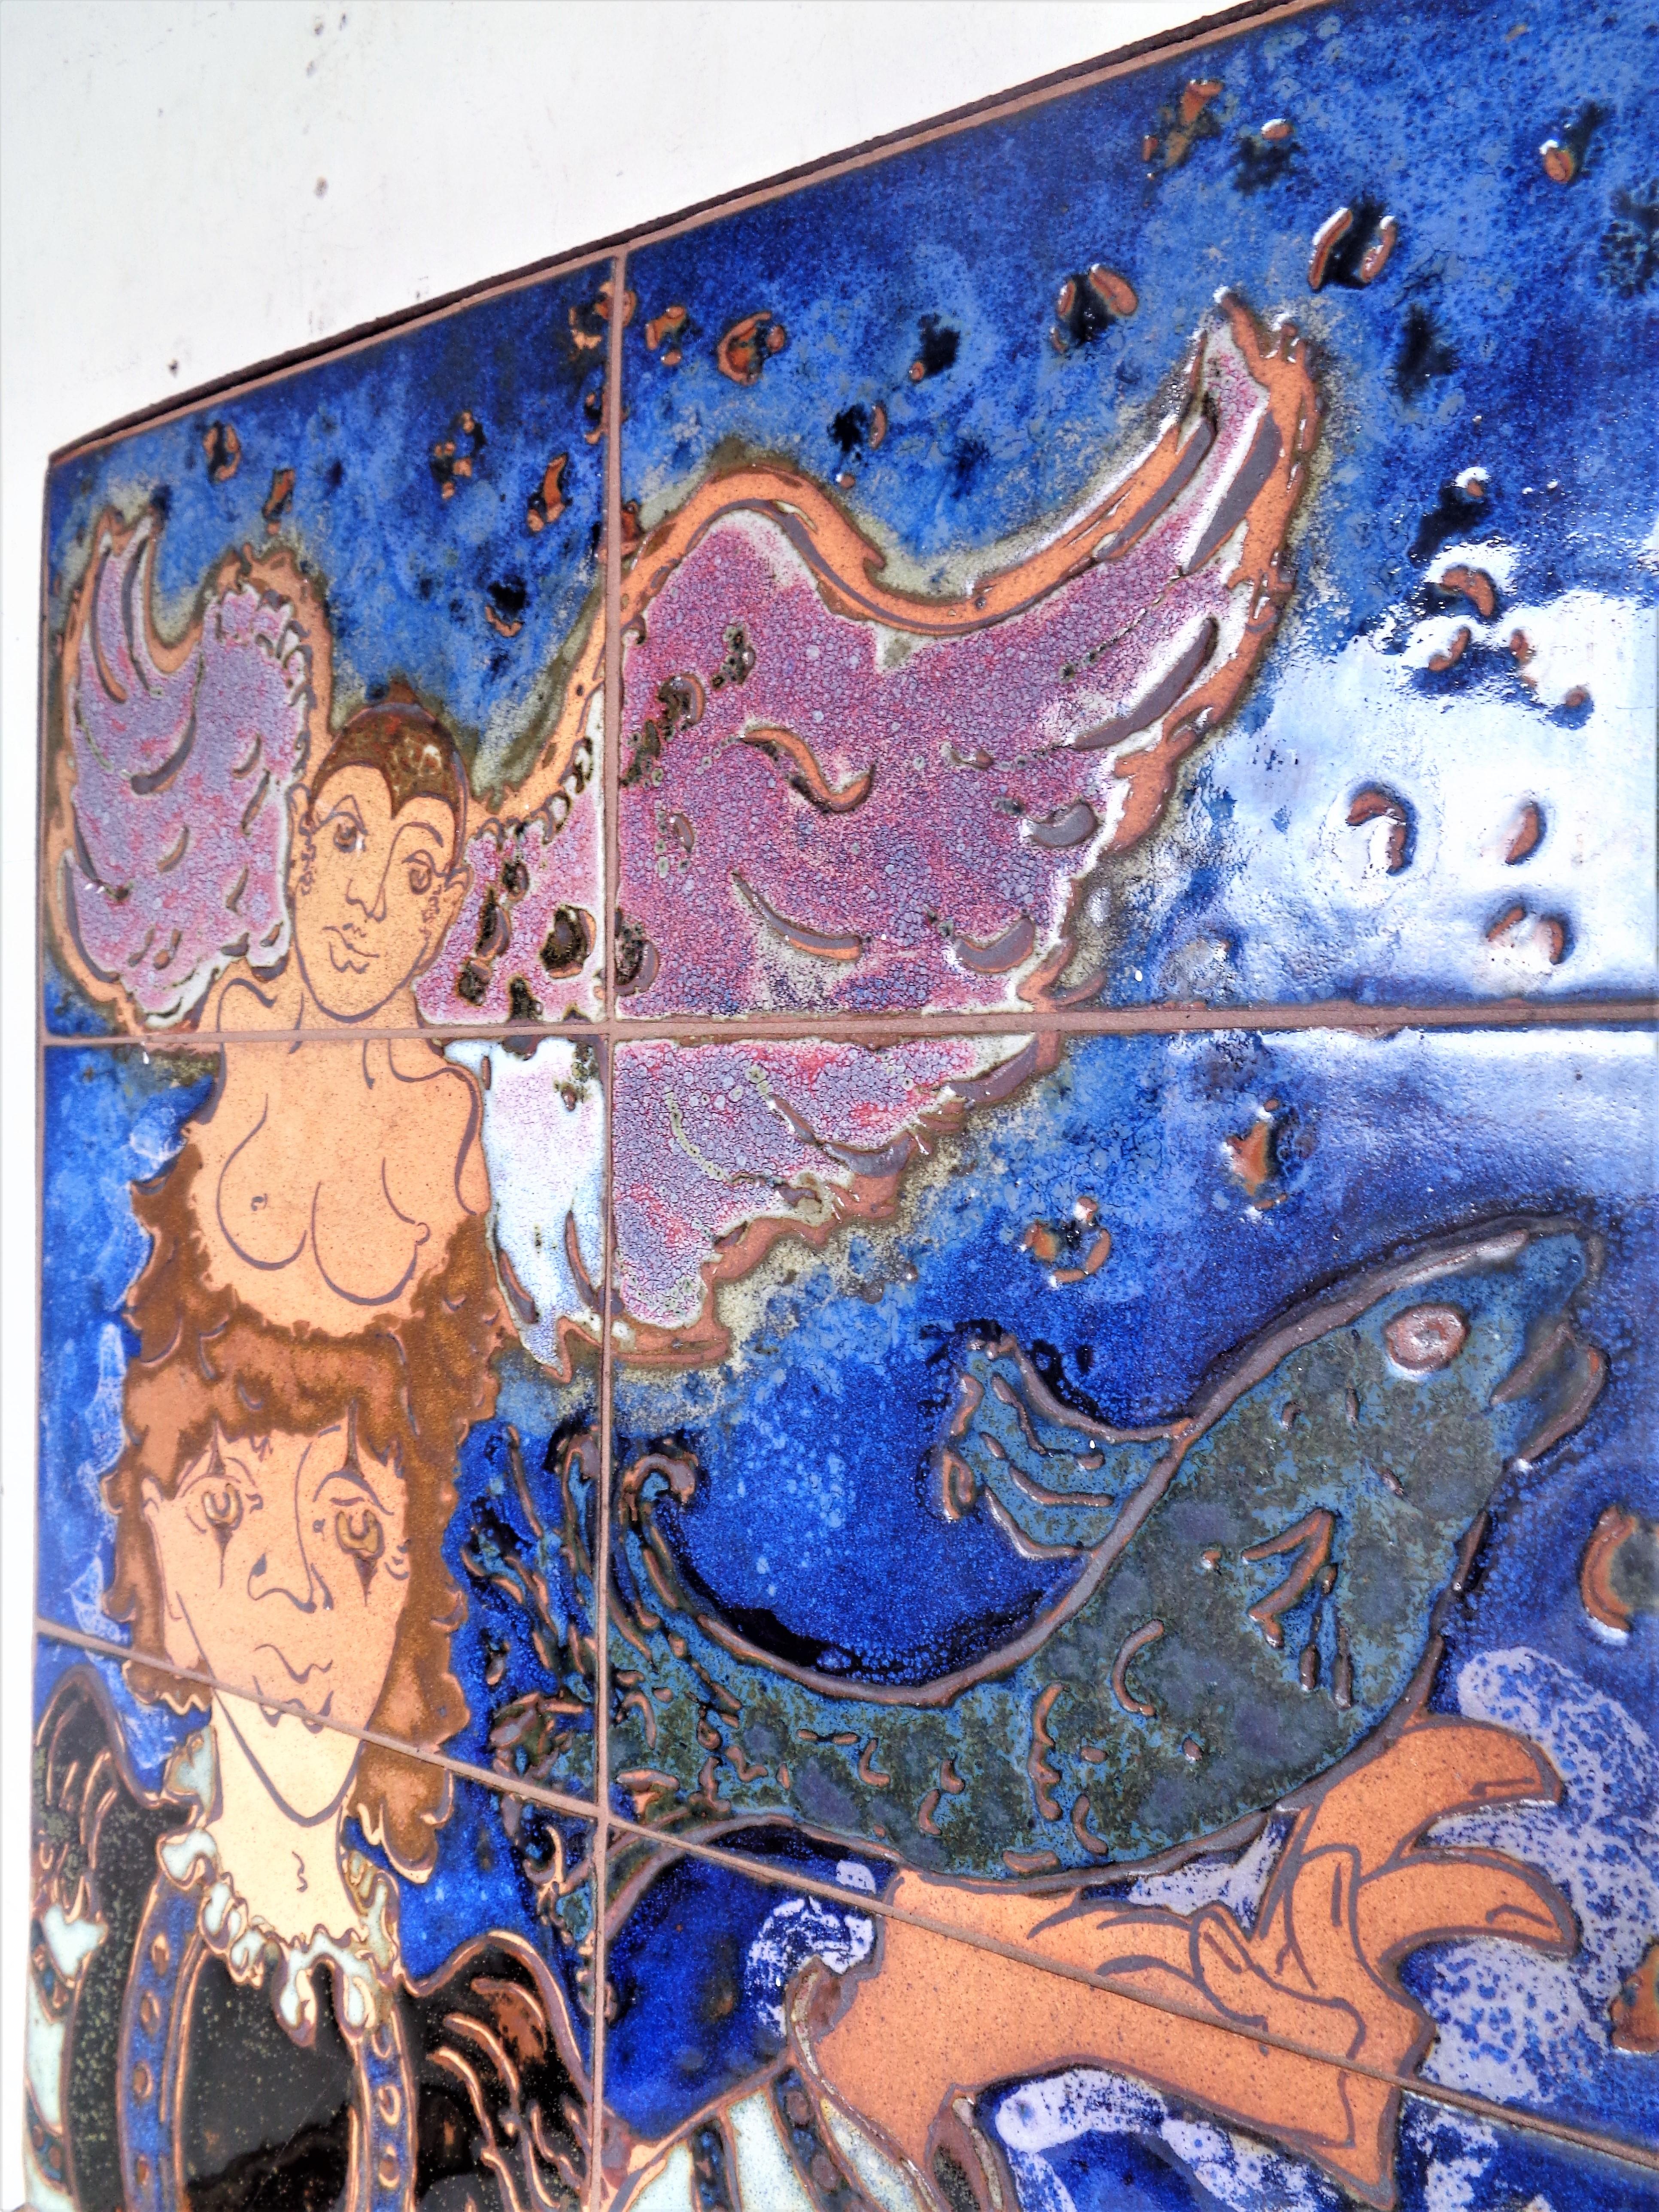 Ein handgefertigtes, handbemaltes, brillant glasiertes Keramikfliesen-Wandtafelgemälde, das in den originalen, handgeschmiedeten und genieteten Eisenrahmen montiert ist. Eine modernistische, allegorische, figurative Landschaft, die aus zehn Fliesen